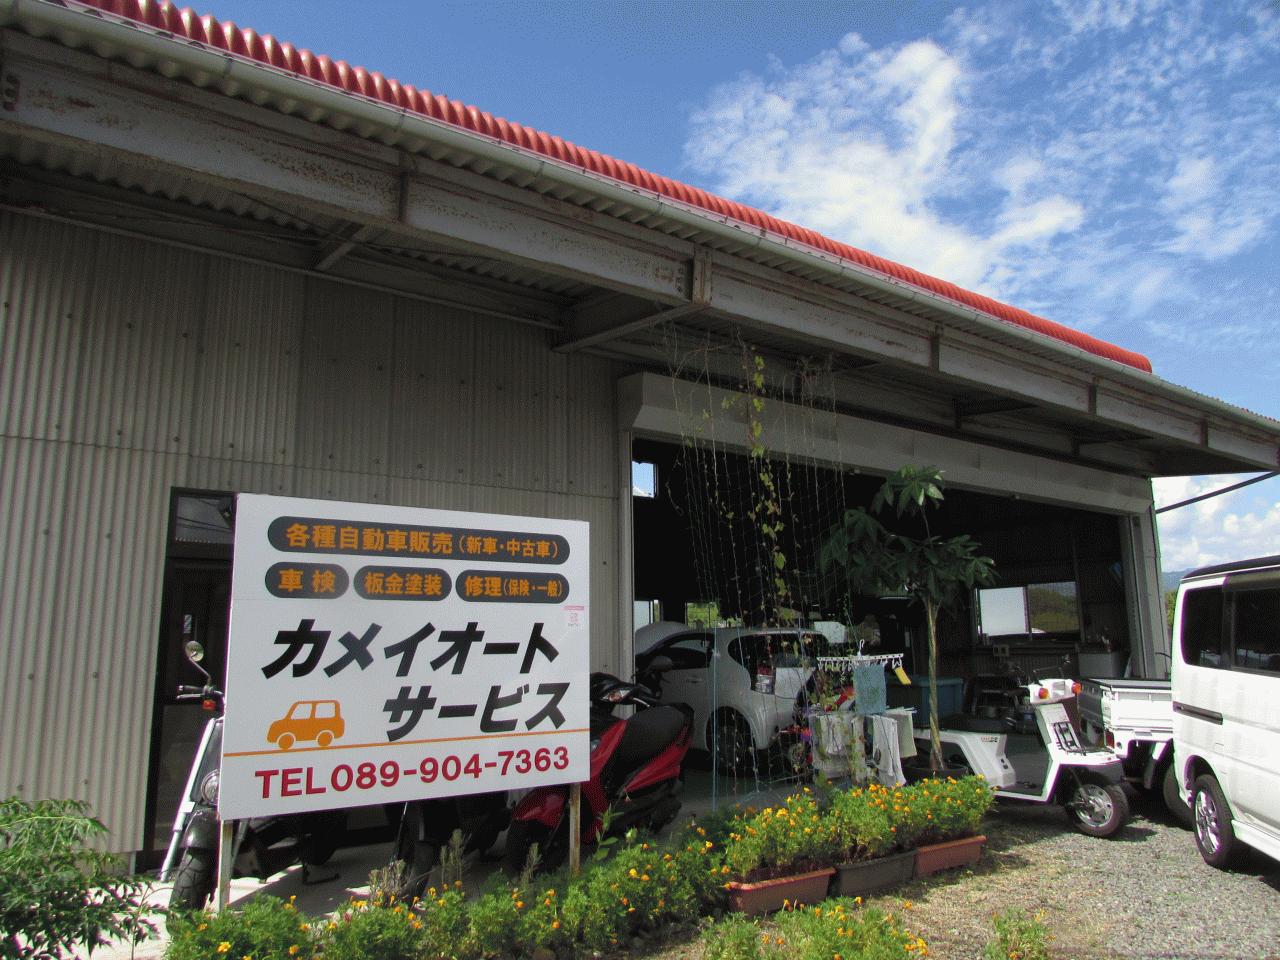 カメイオートサービス 愛媛県松山市 Mjnetディーラー お店の情報